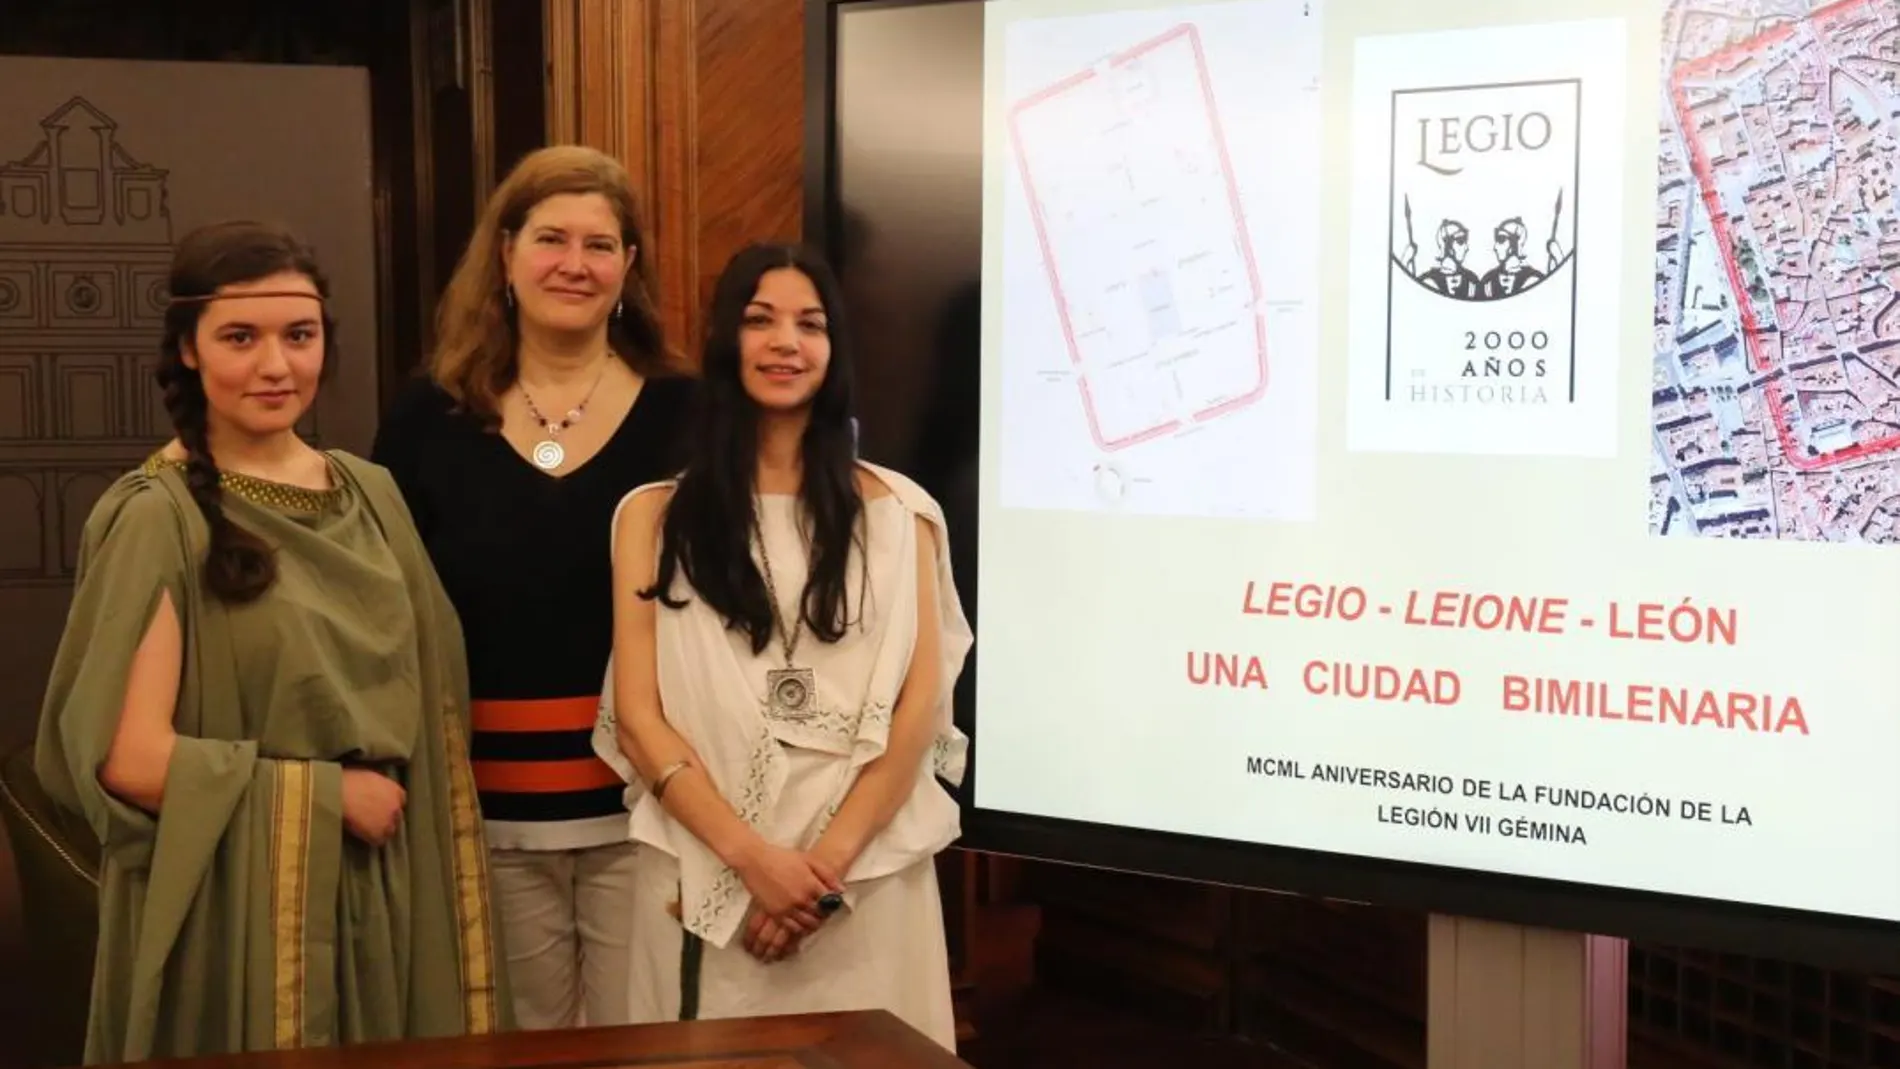 La concejal Margarita Torres presenta el programa de actividades junto a dos jóvenes ataviadas con vestimenta romana